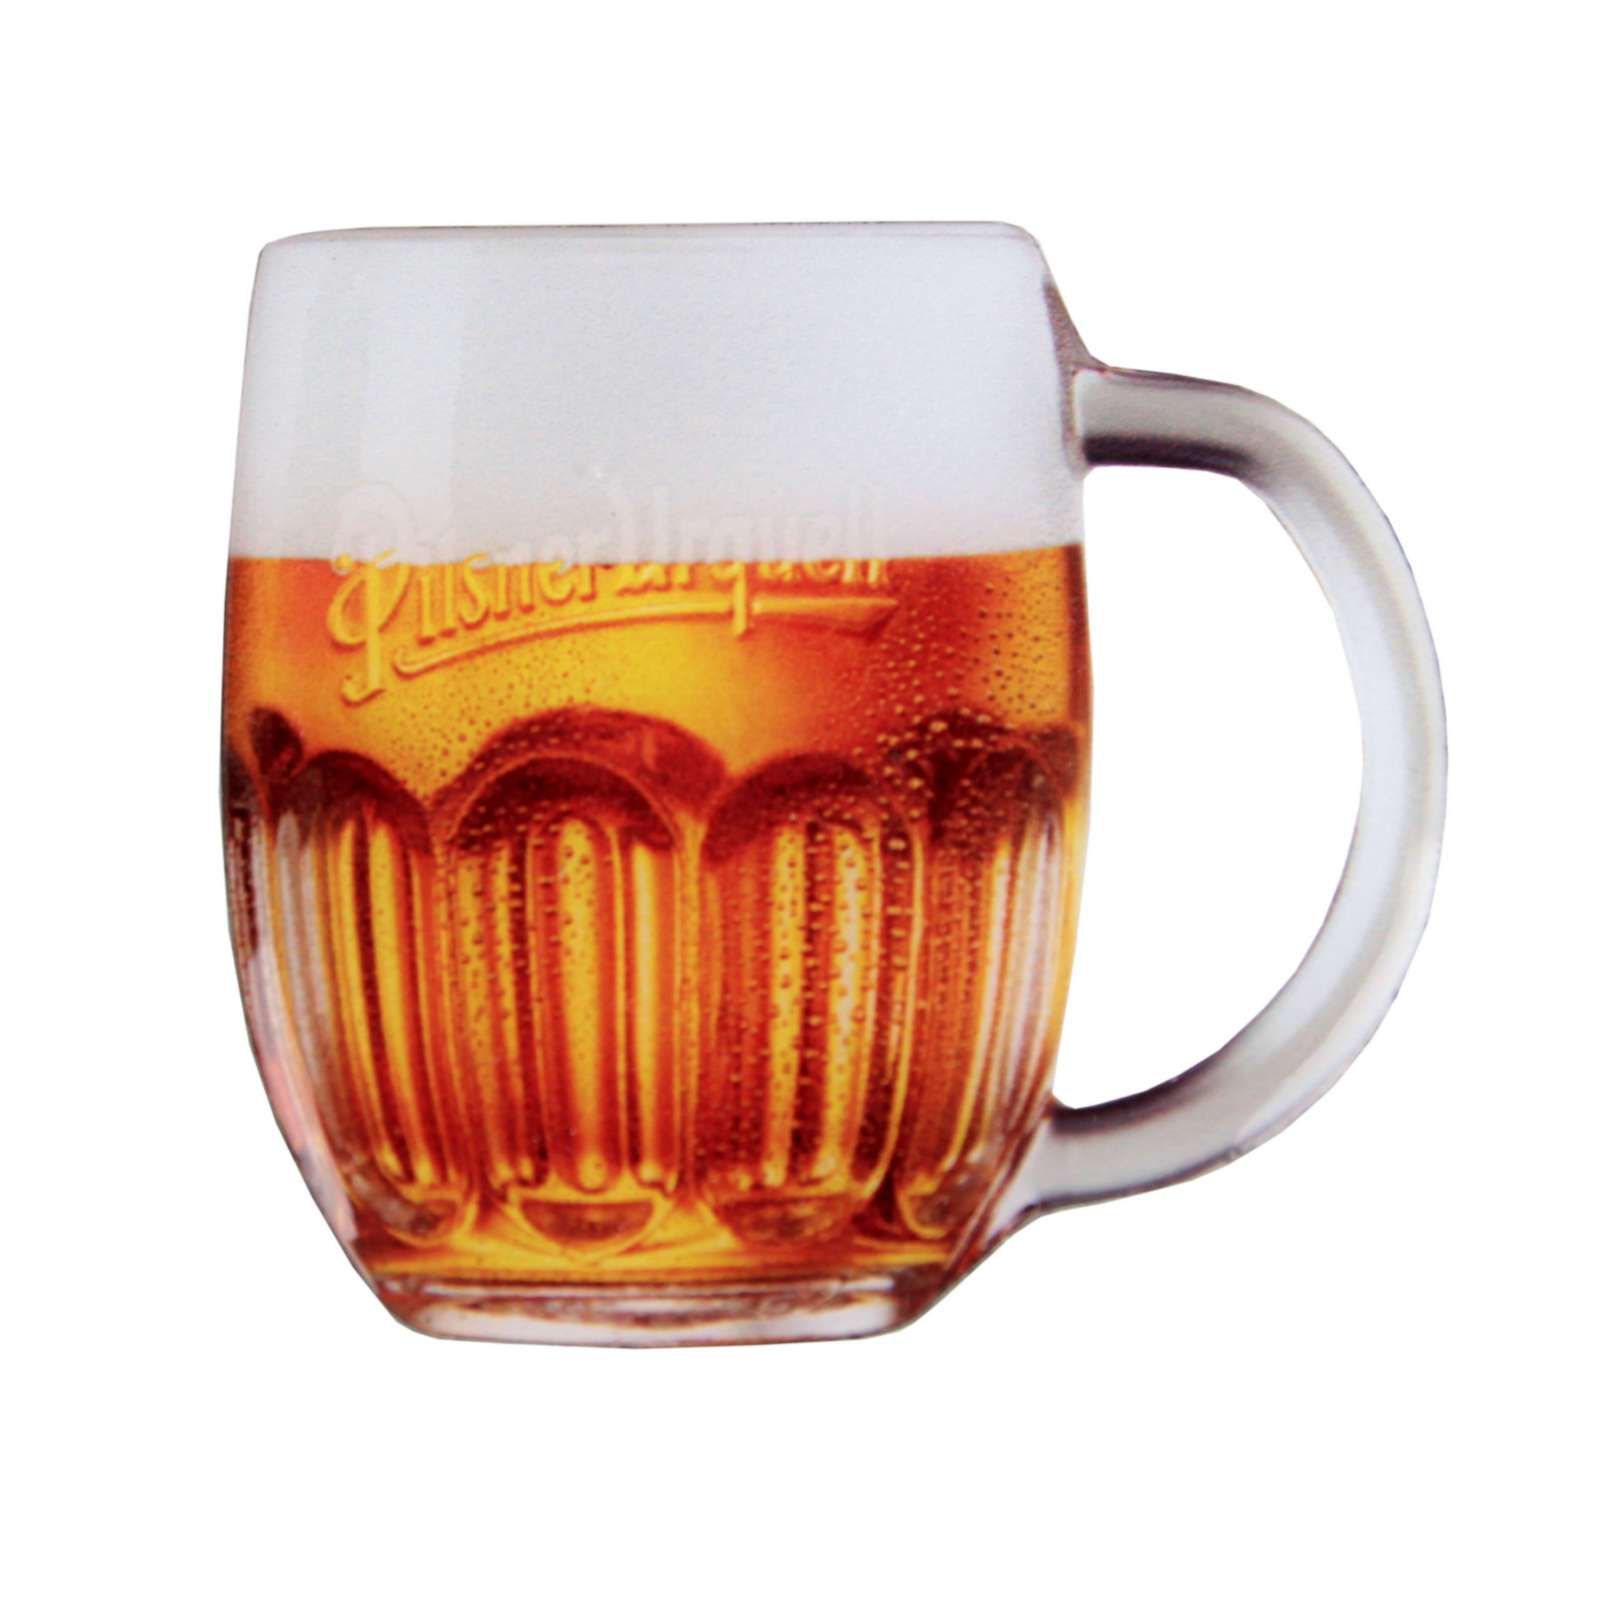 Pilsner Urquell beer mug magnet